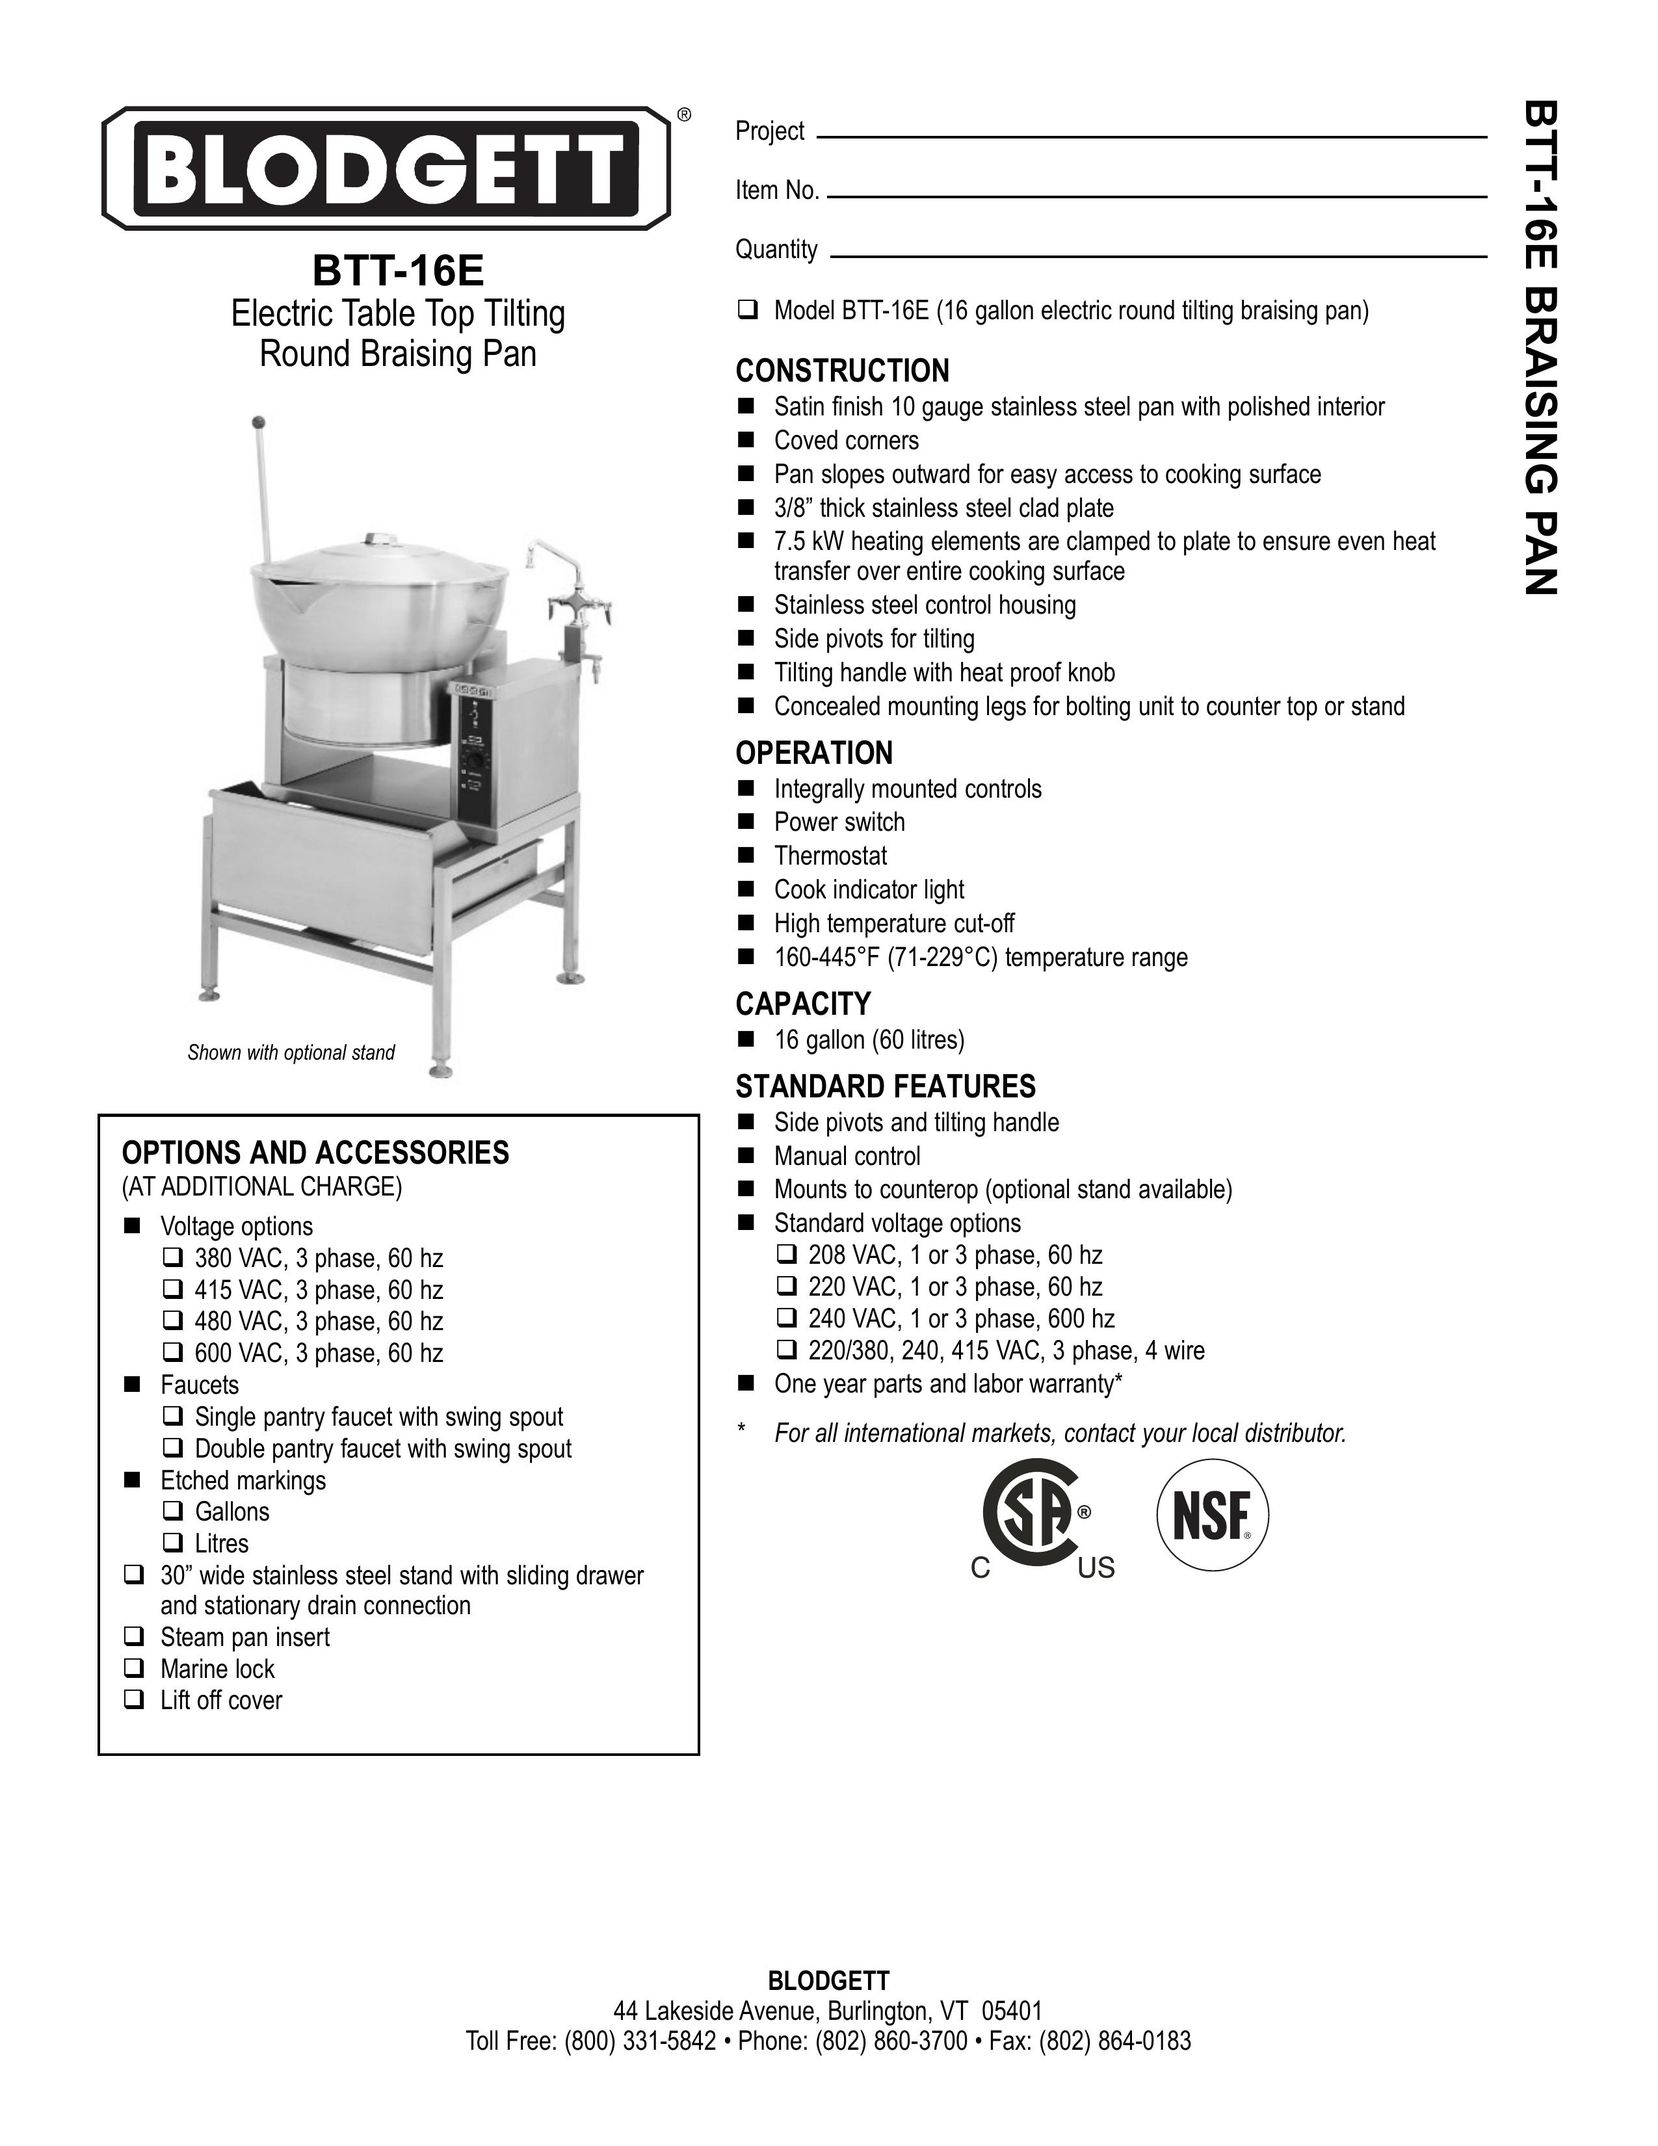 Blodgett BTT-16E Cookware User Manual